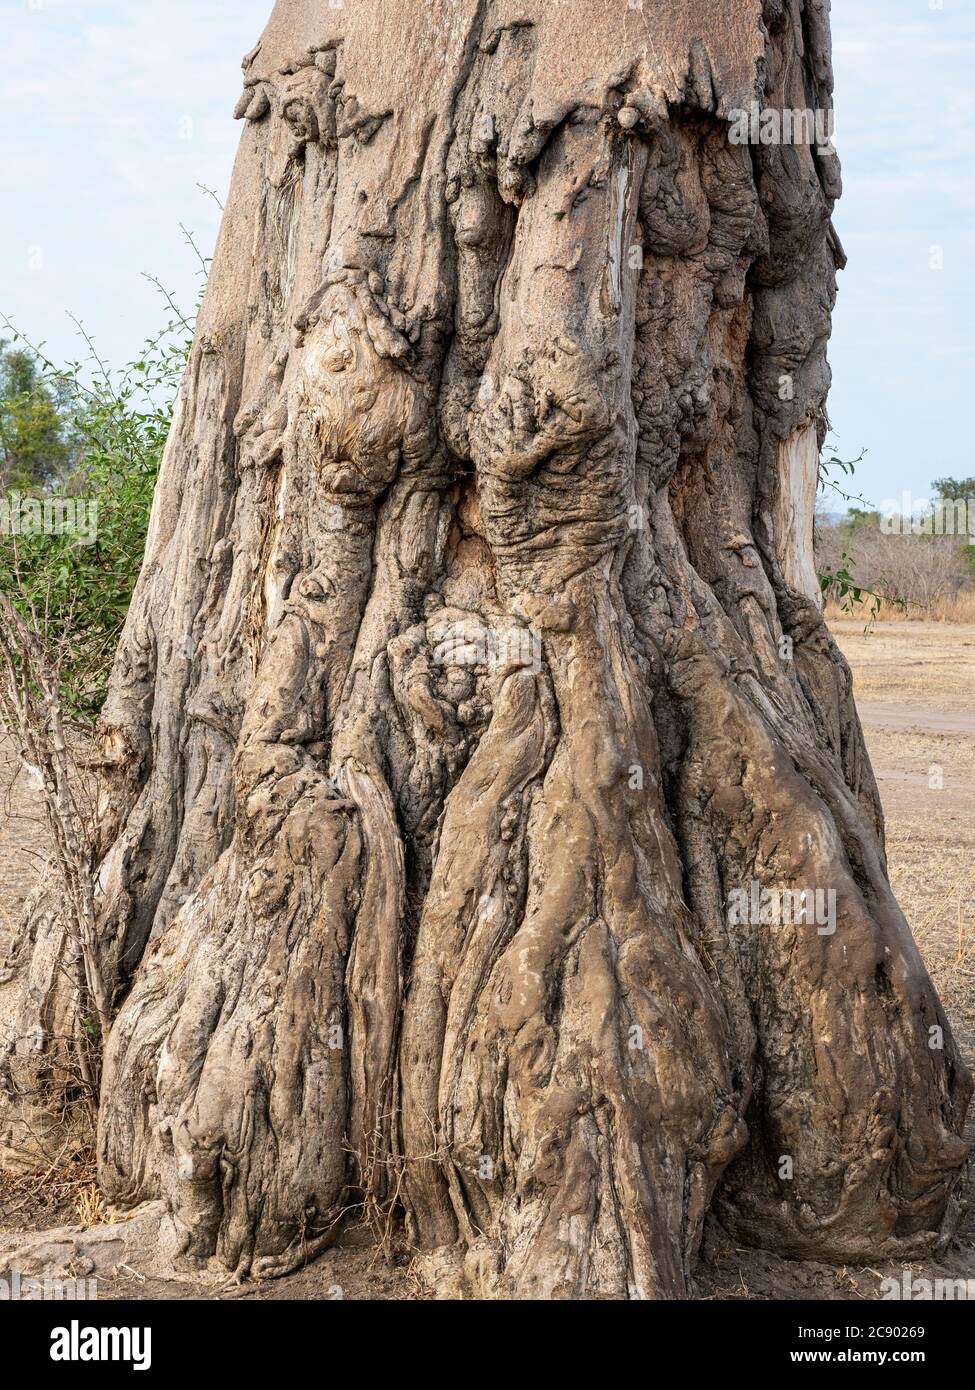 Un très grand baobab, l'Adansonia digitata, montrant des dégâts de recherche d'éléphants dans le parc national de Luangwa Sud, en Zambie. Banque D'Images